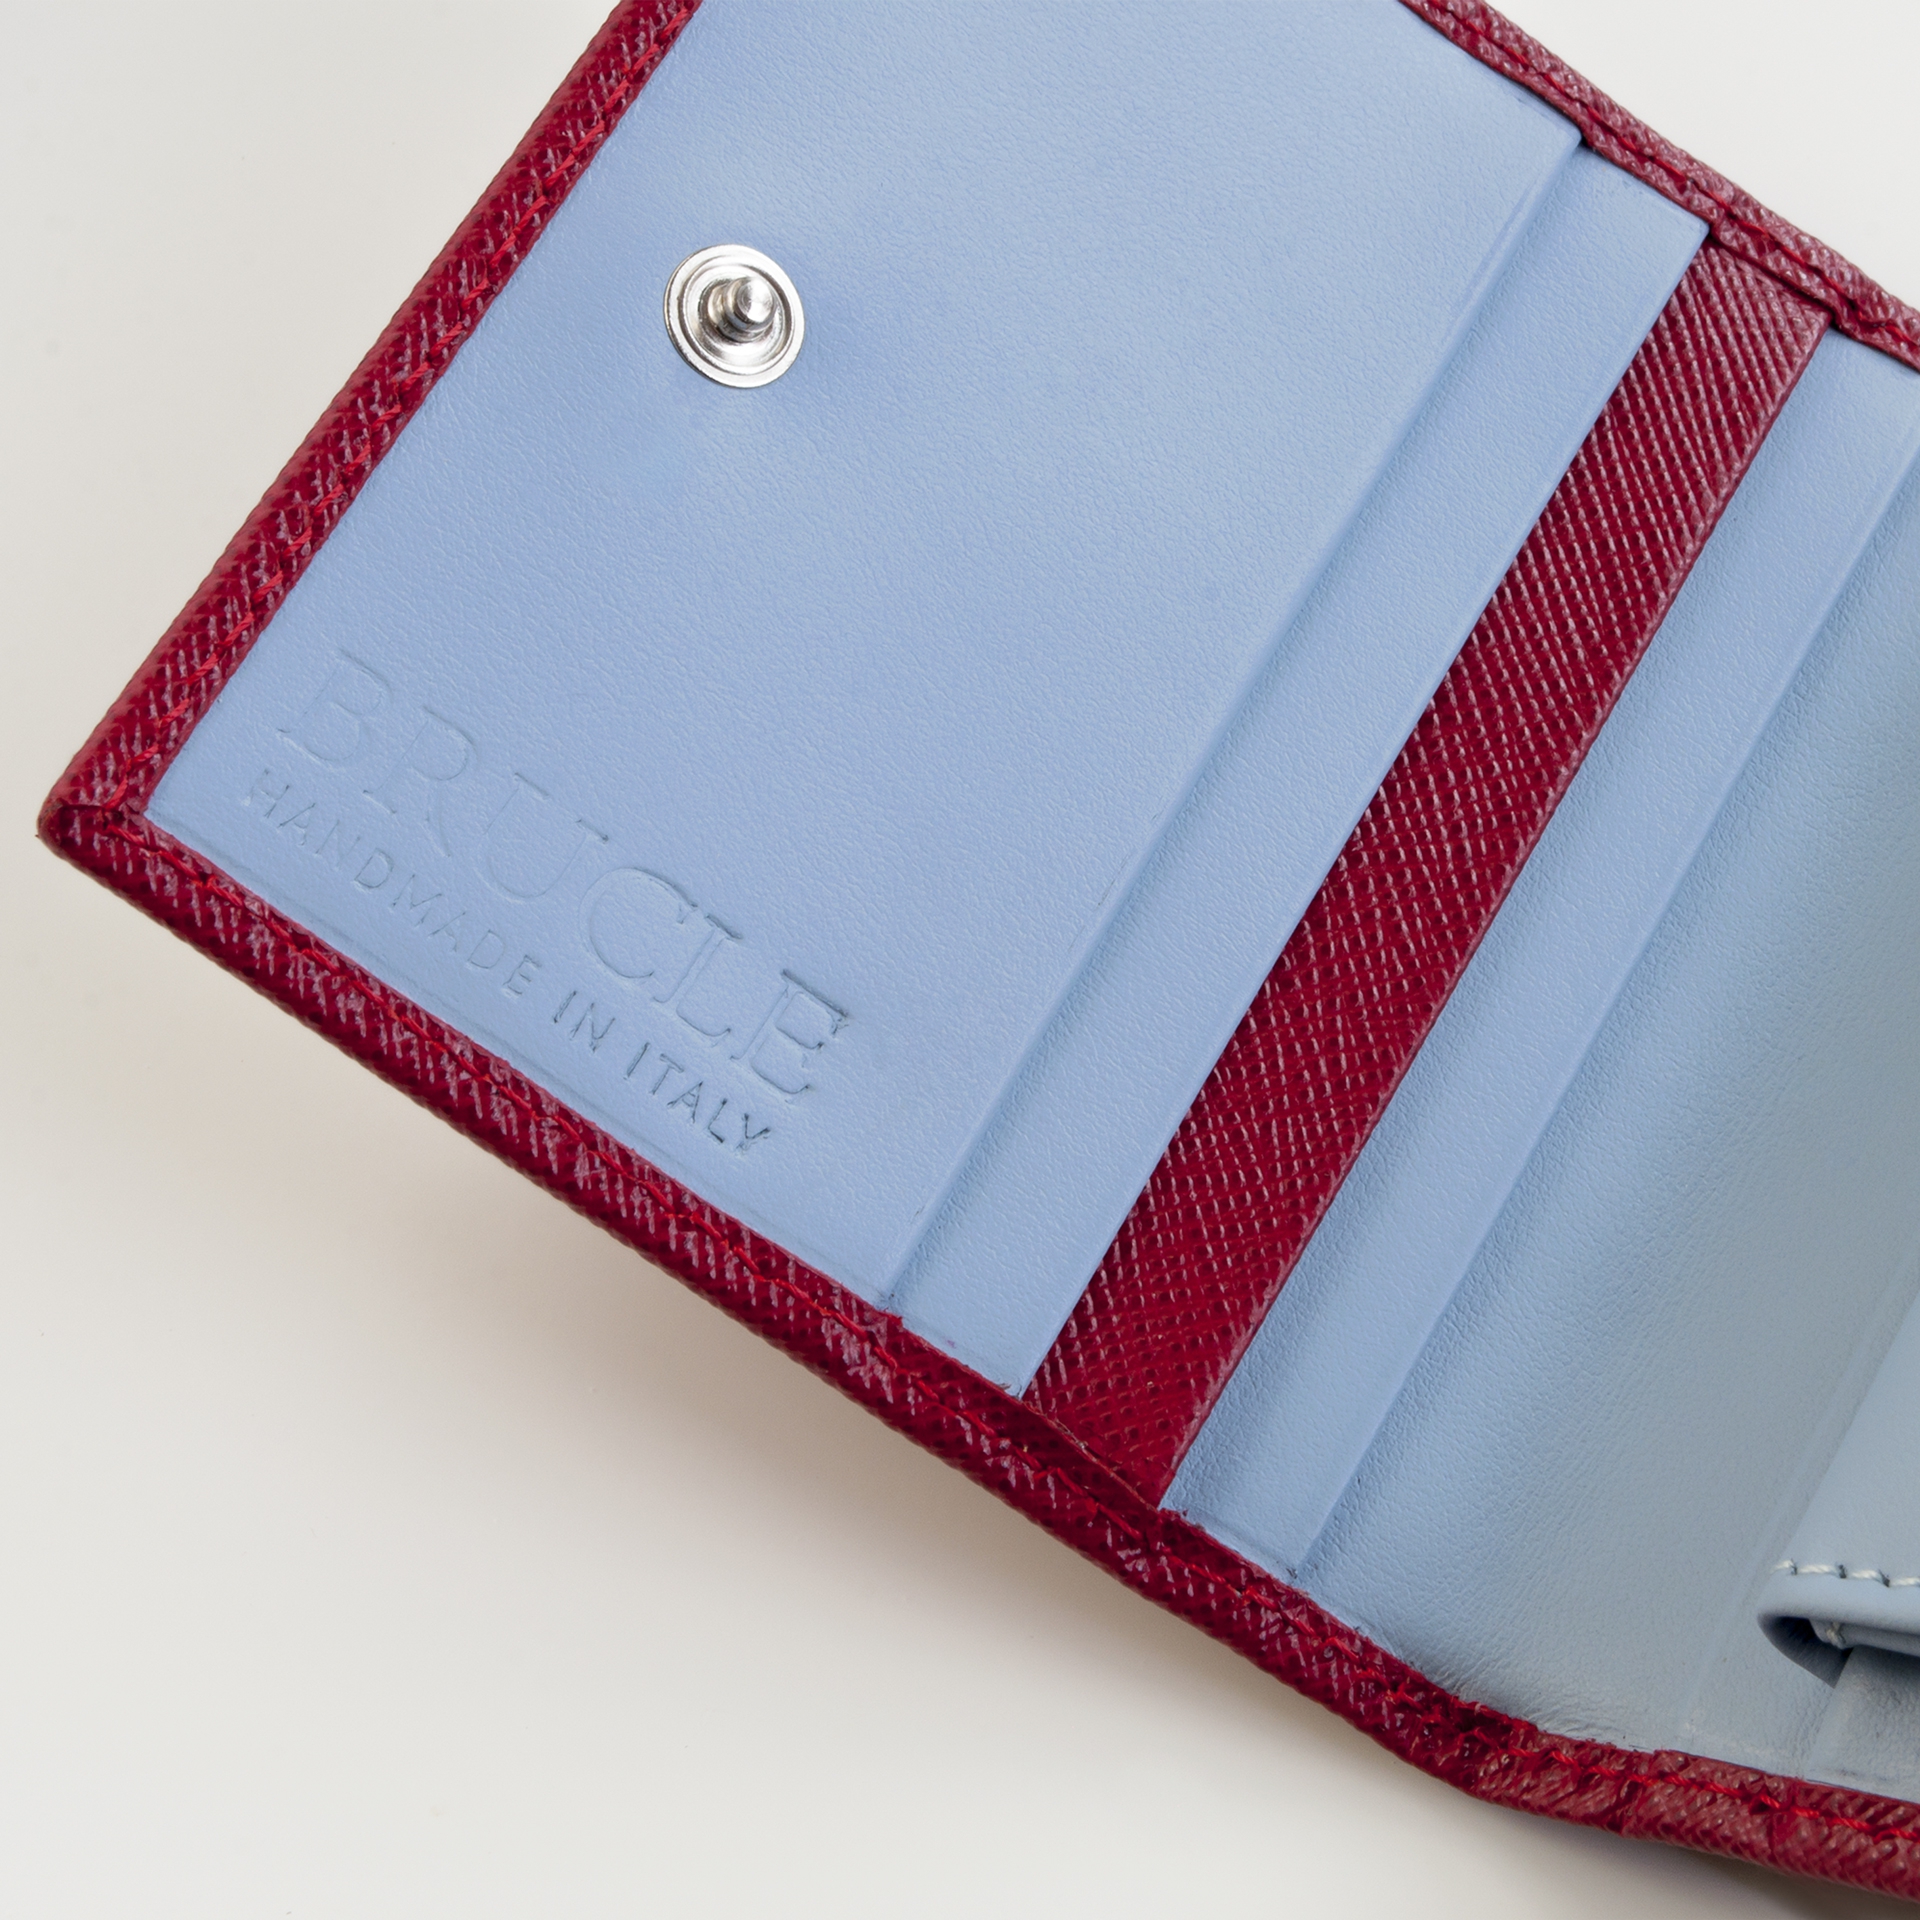 Mini portefeuille compact en cuir saffiano avec pince à billets et porte-monnaie, rouge et bleu clair